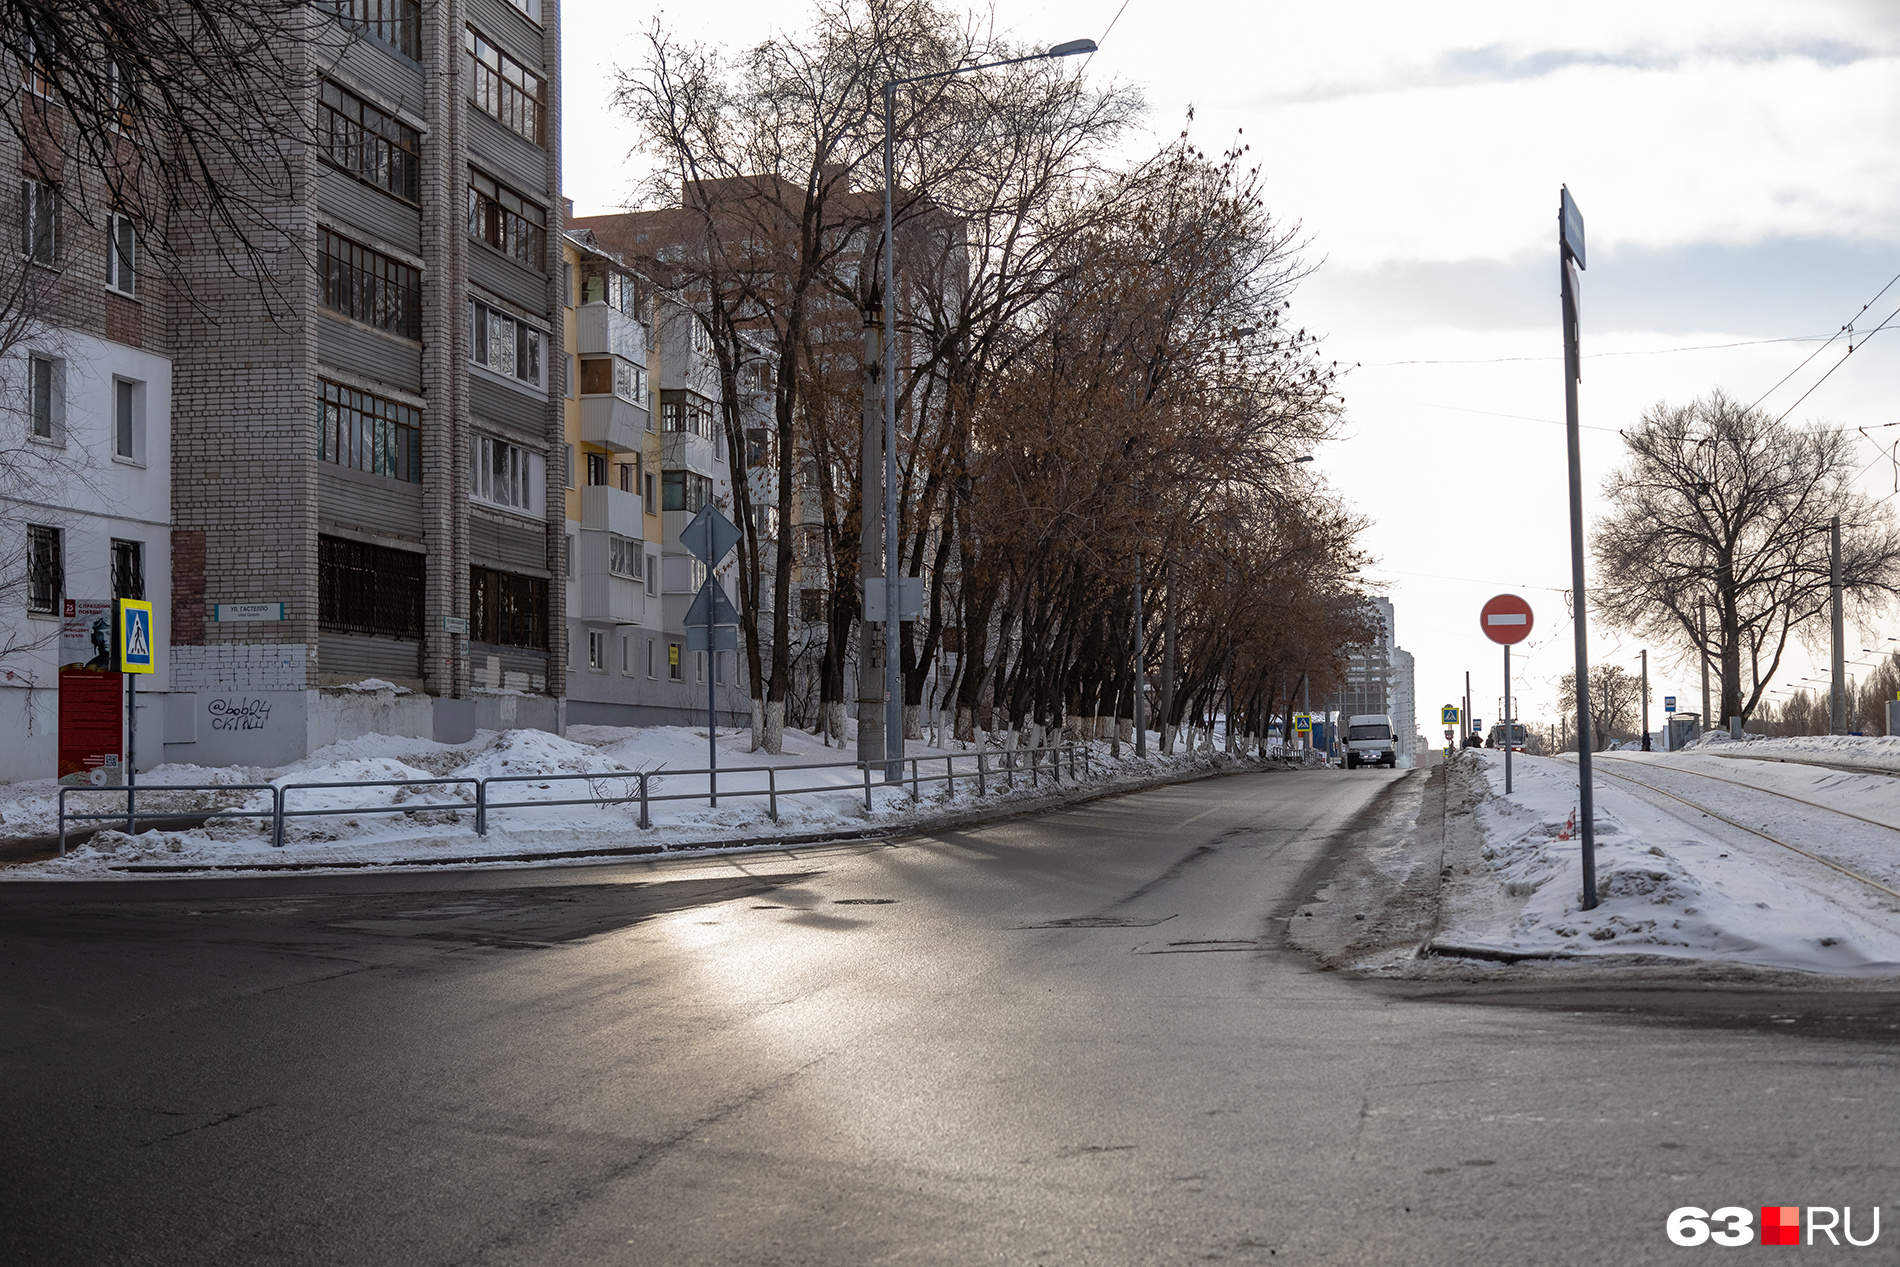 По этой дороге планируется пропускать основной поток машин, когда Ново-Садовую полностью перекроют. Дублер расширят до четырех полос: по две в каждую сторону движения